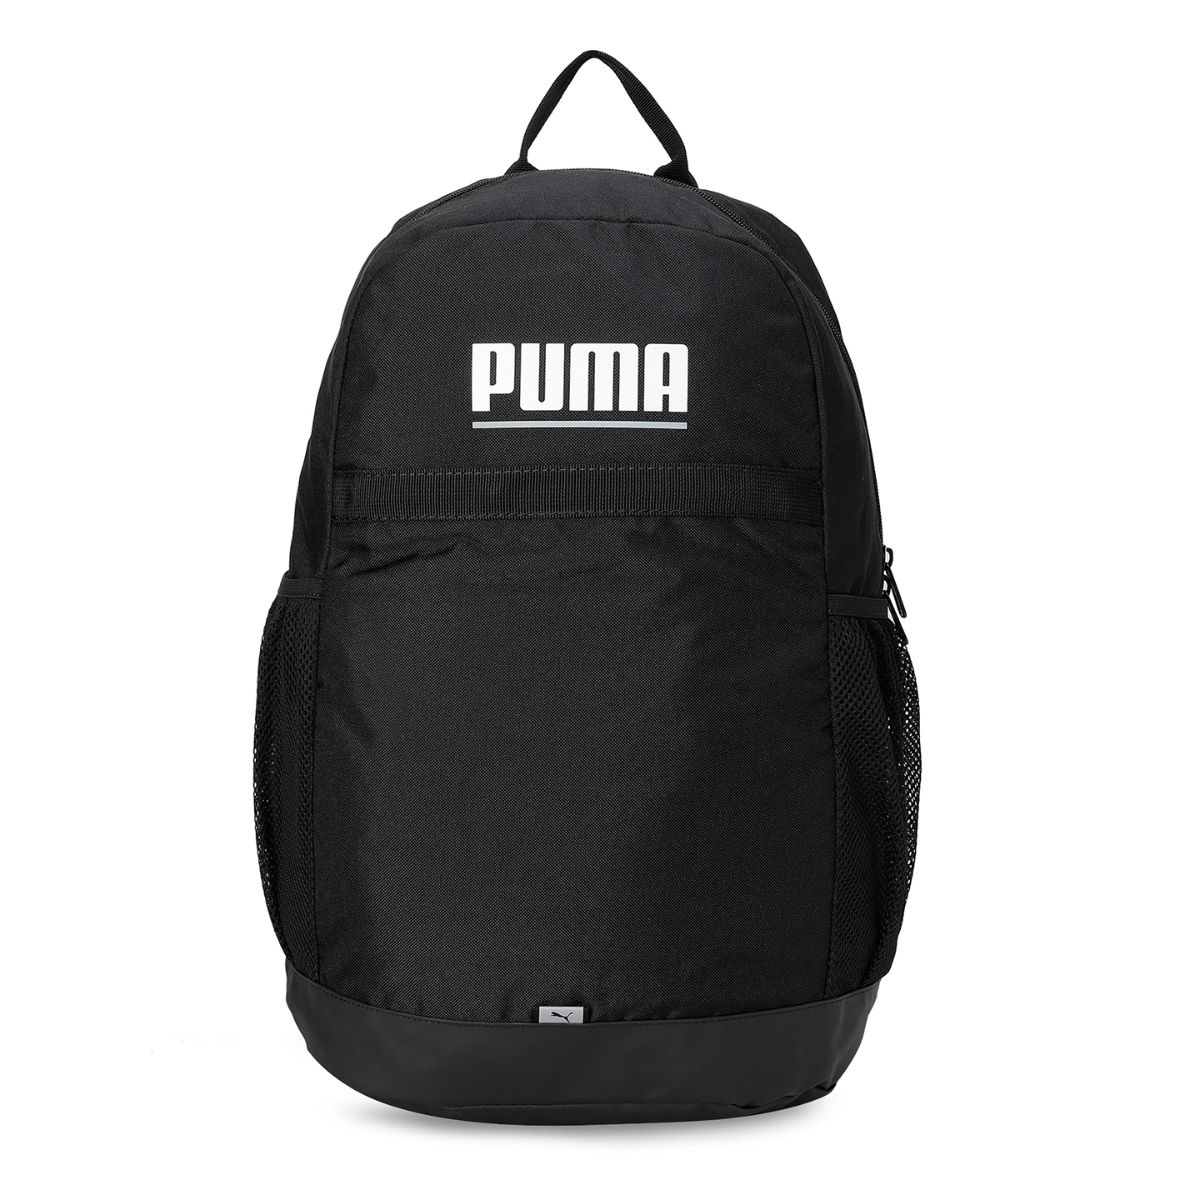 Puma Plus Unisex Black Backpacks: Buy Puma Plus Unisex Black Backpacks ...